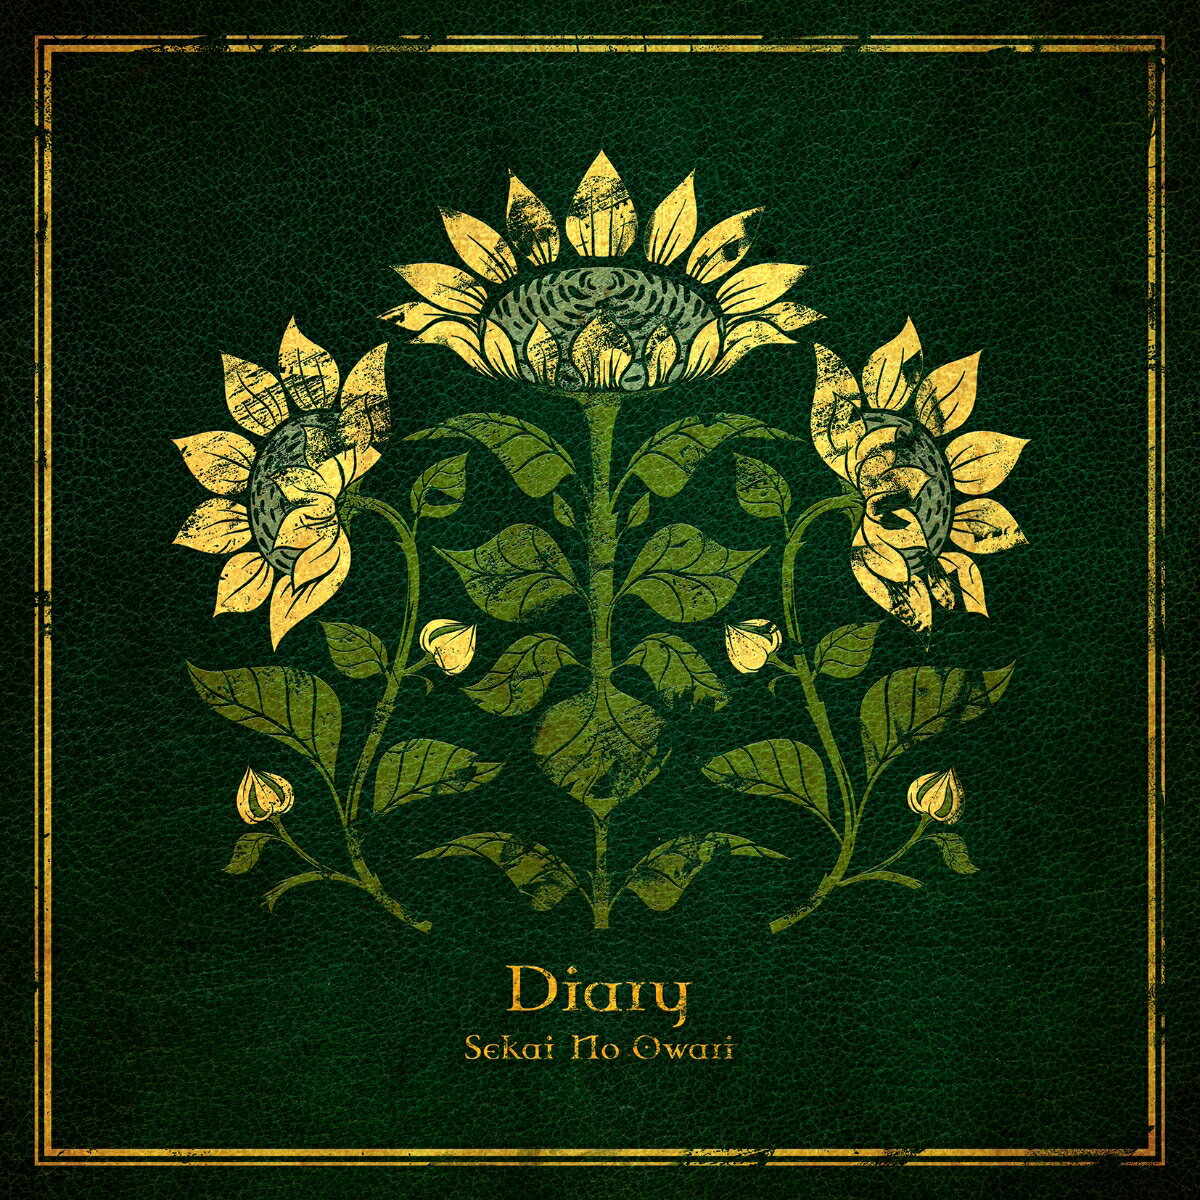 Diary (初回限定盤B CD＋DVD)